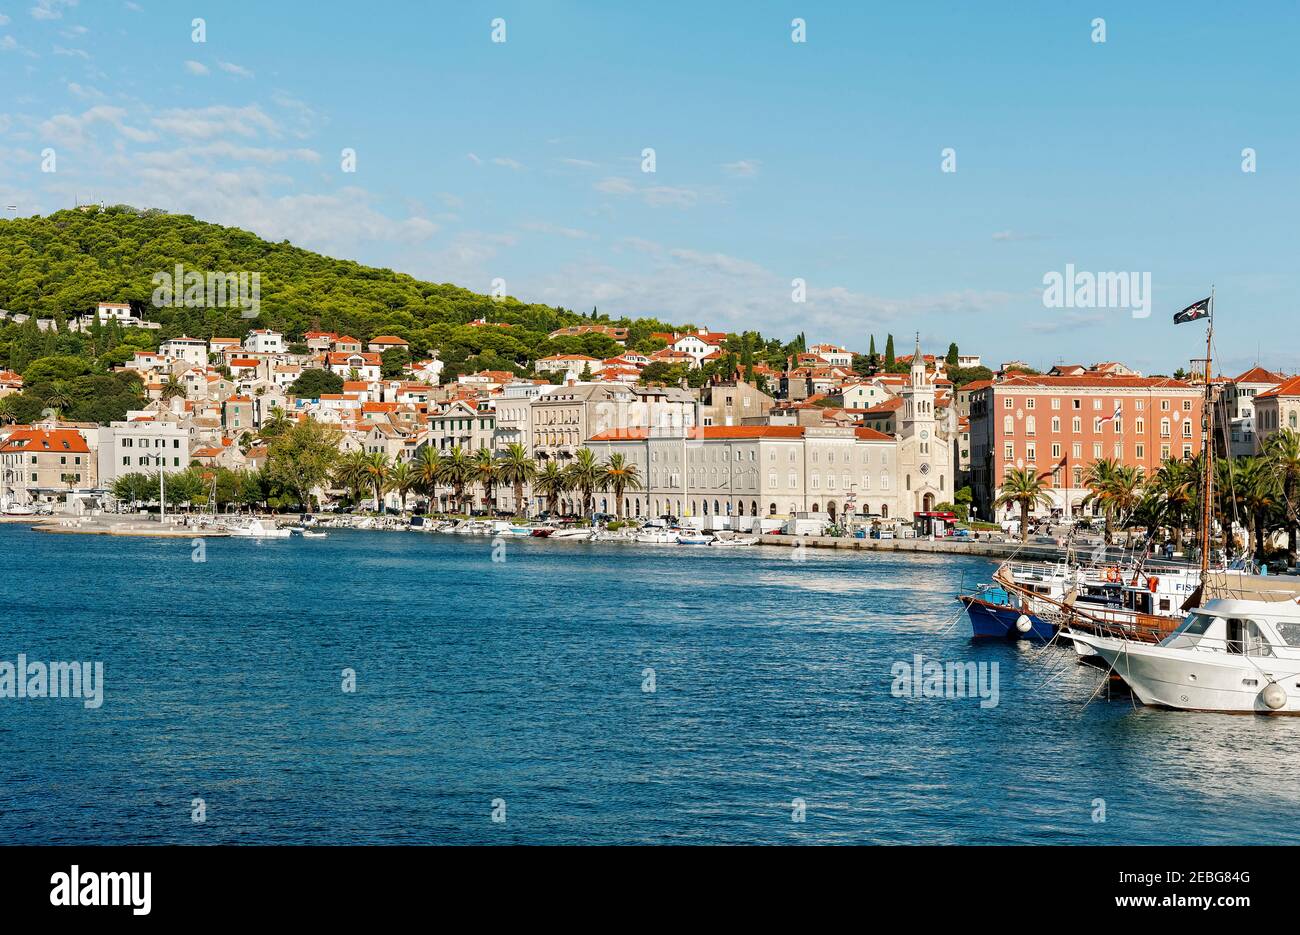 Spalato, Croazia, 28 agosto 2019: Città di Spalato in Croazia, vista dal porto alla città vecchia sul mare Adriatico. Foto Stock